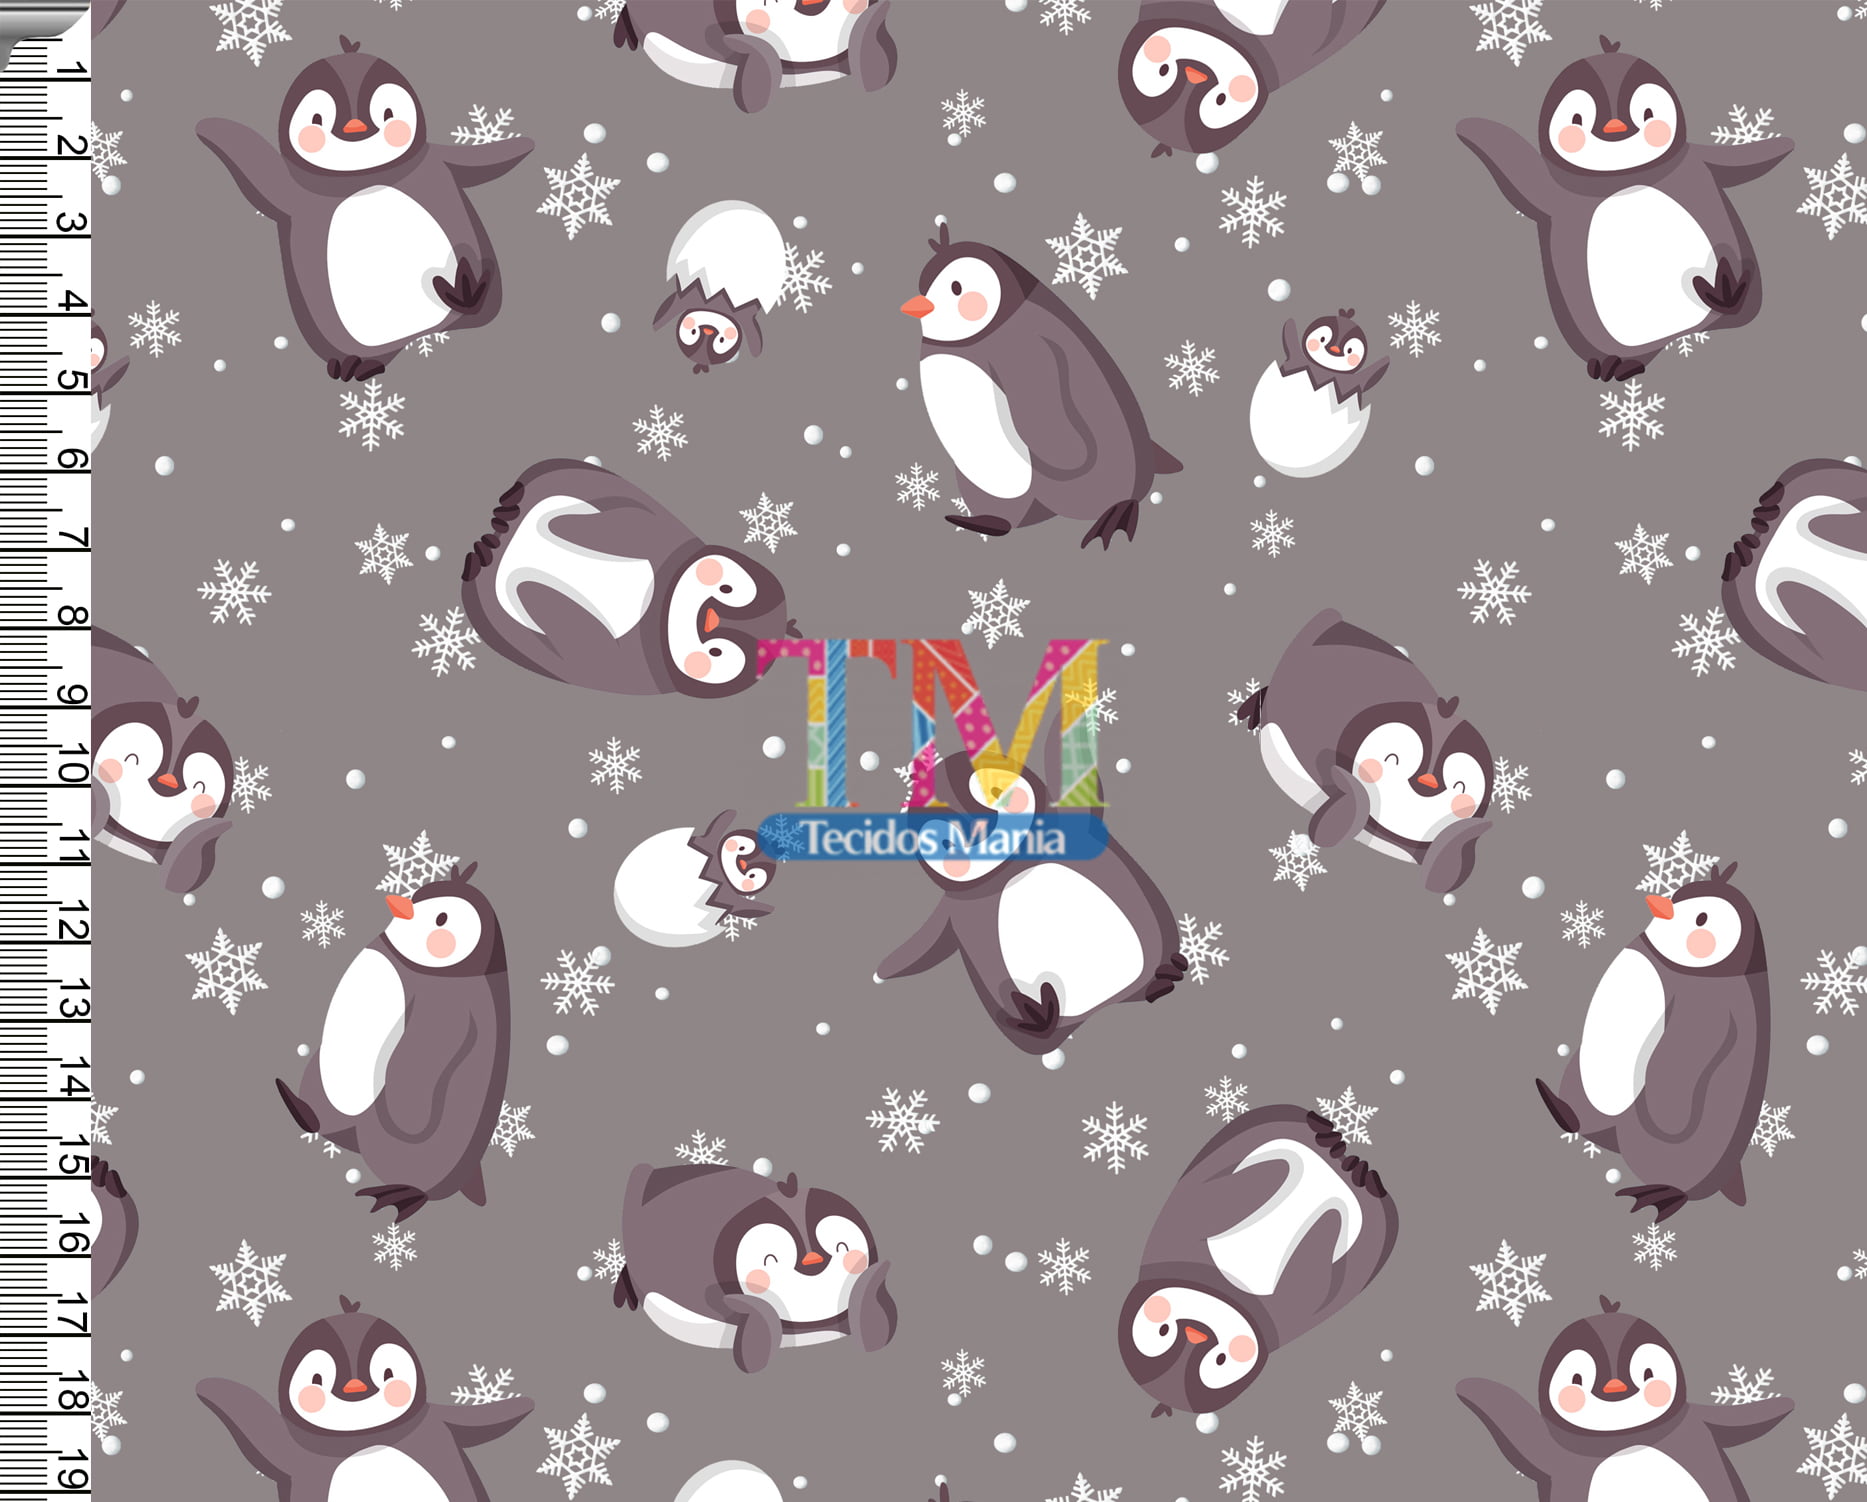 Sintético doll estampado - Pinguim - flocos de neve - fundo cinza 